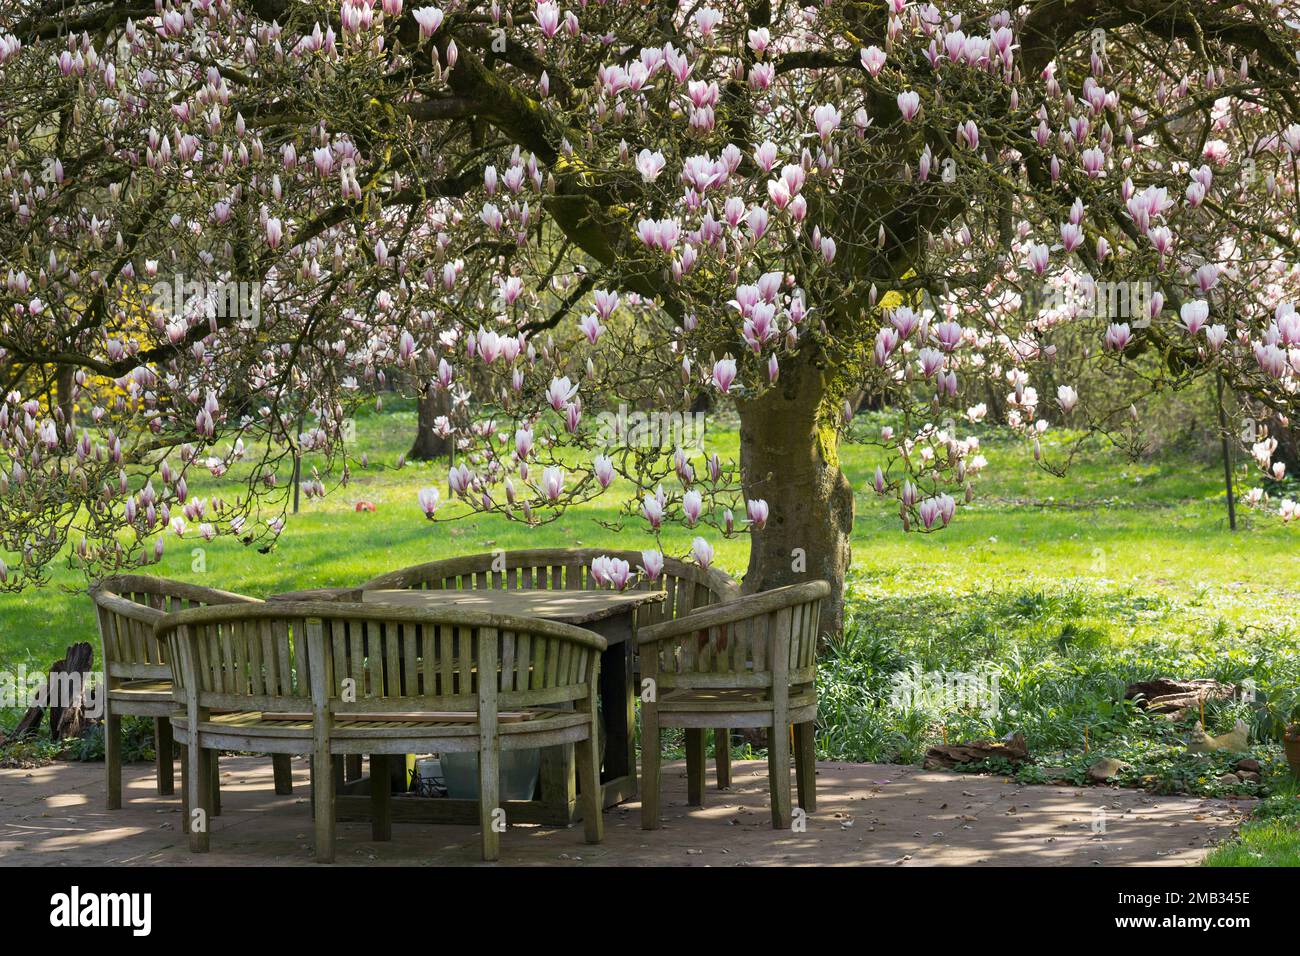 Tulpen-Magnolie, Blüten, blühend, mit Sitzgruppe, Gartenmöbel, Sitzplatz, Tulpenmagnolie, Tulpen-Magnolie, Magnolienbaum, Gartenmagnolie, Garten-Magno Stock Photo